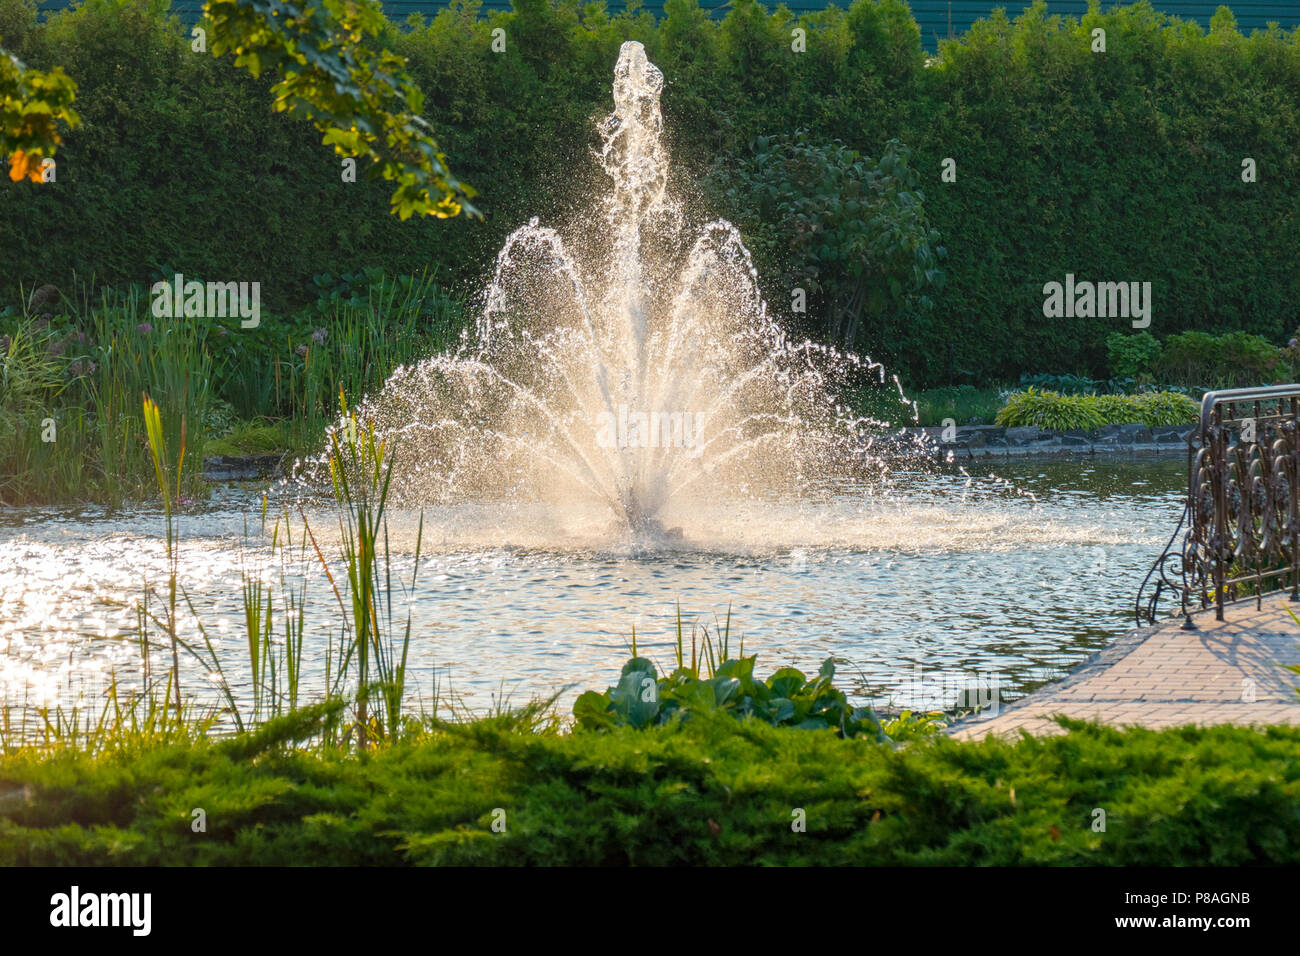 Einen herrlichen Blick auf einen Brunnen in einem Teich mit klarem Wasser mit fliegenden Spritzer Wasser spritzte vor dem hintergrund der grünen Vegetation Stockfoto